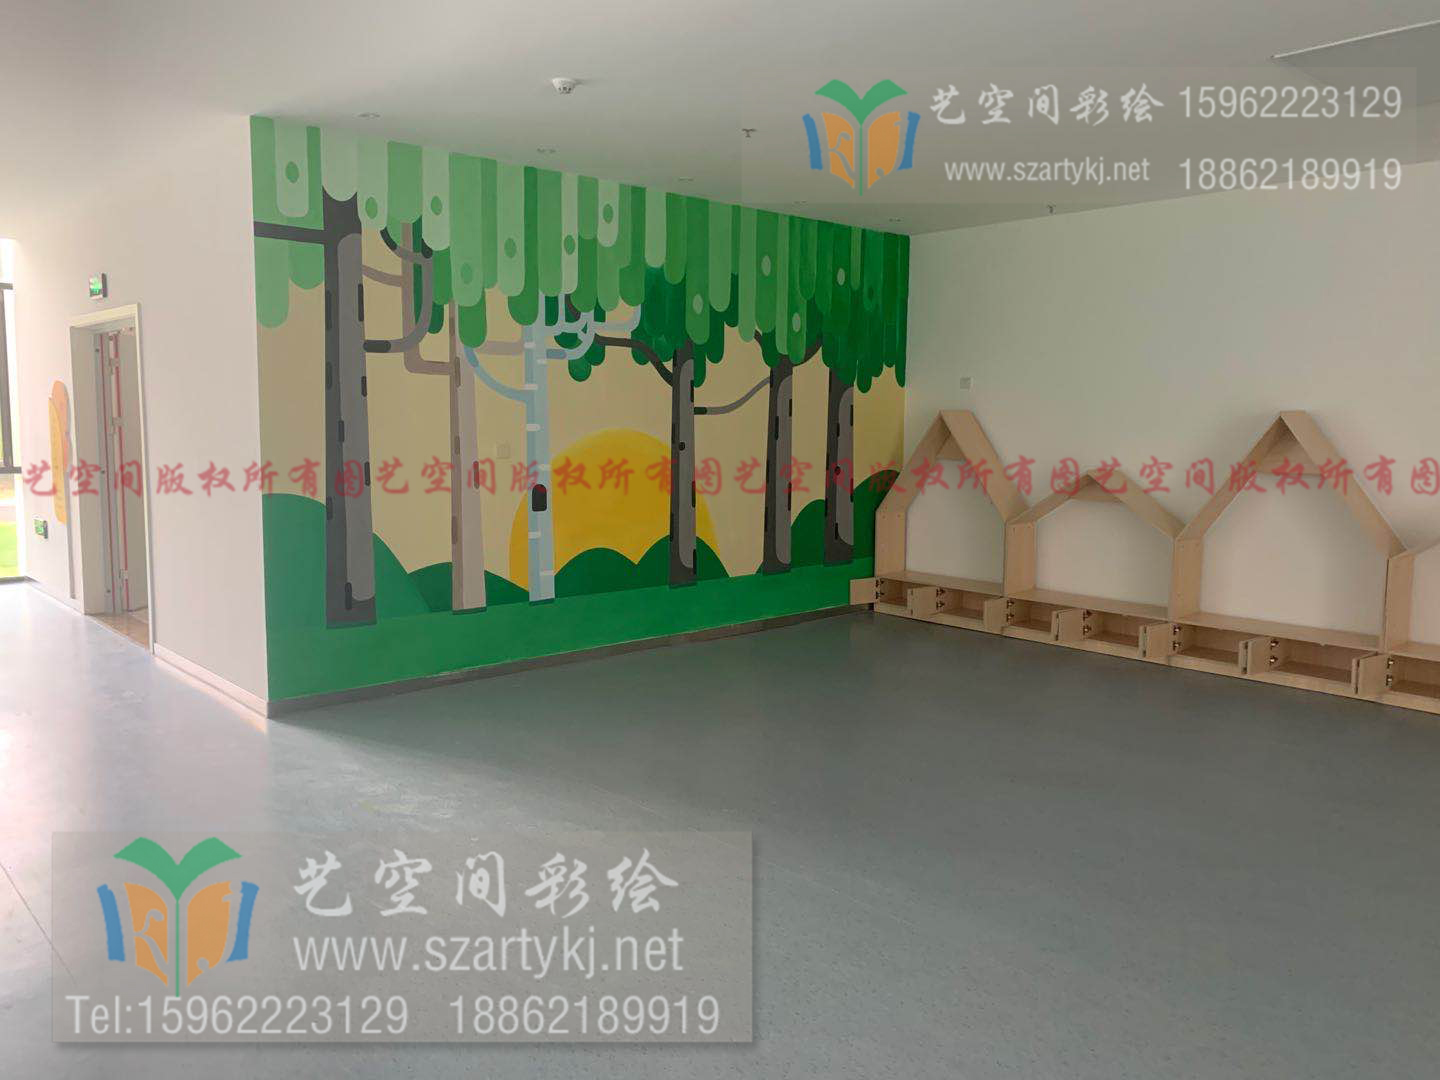 上海室内彩绘画